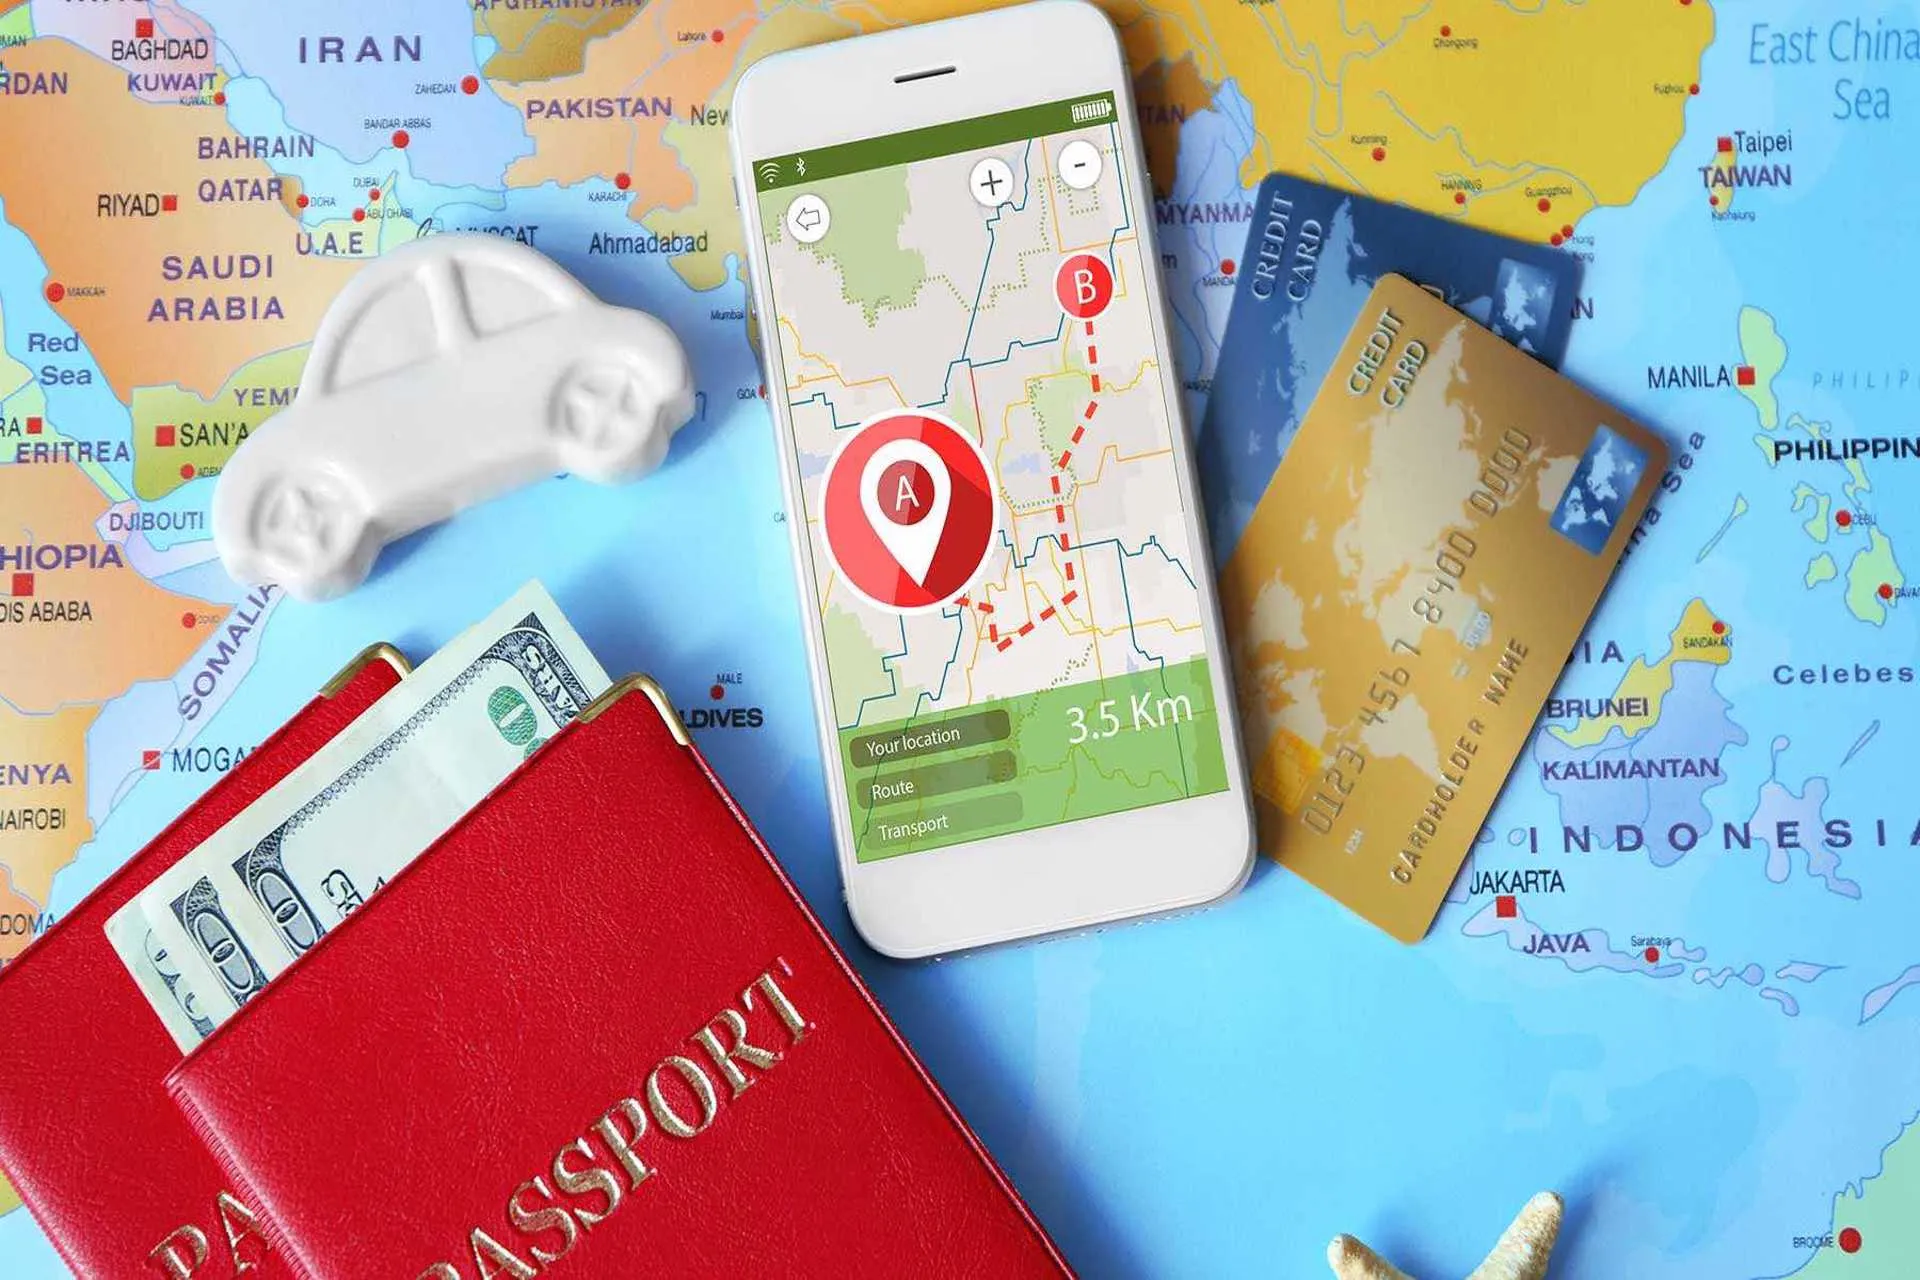 Descargas de App's de viajes superan las cantidades de 2019